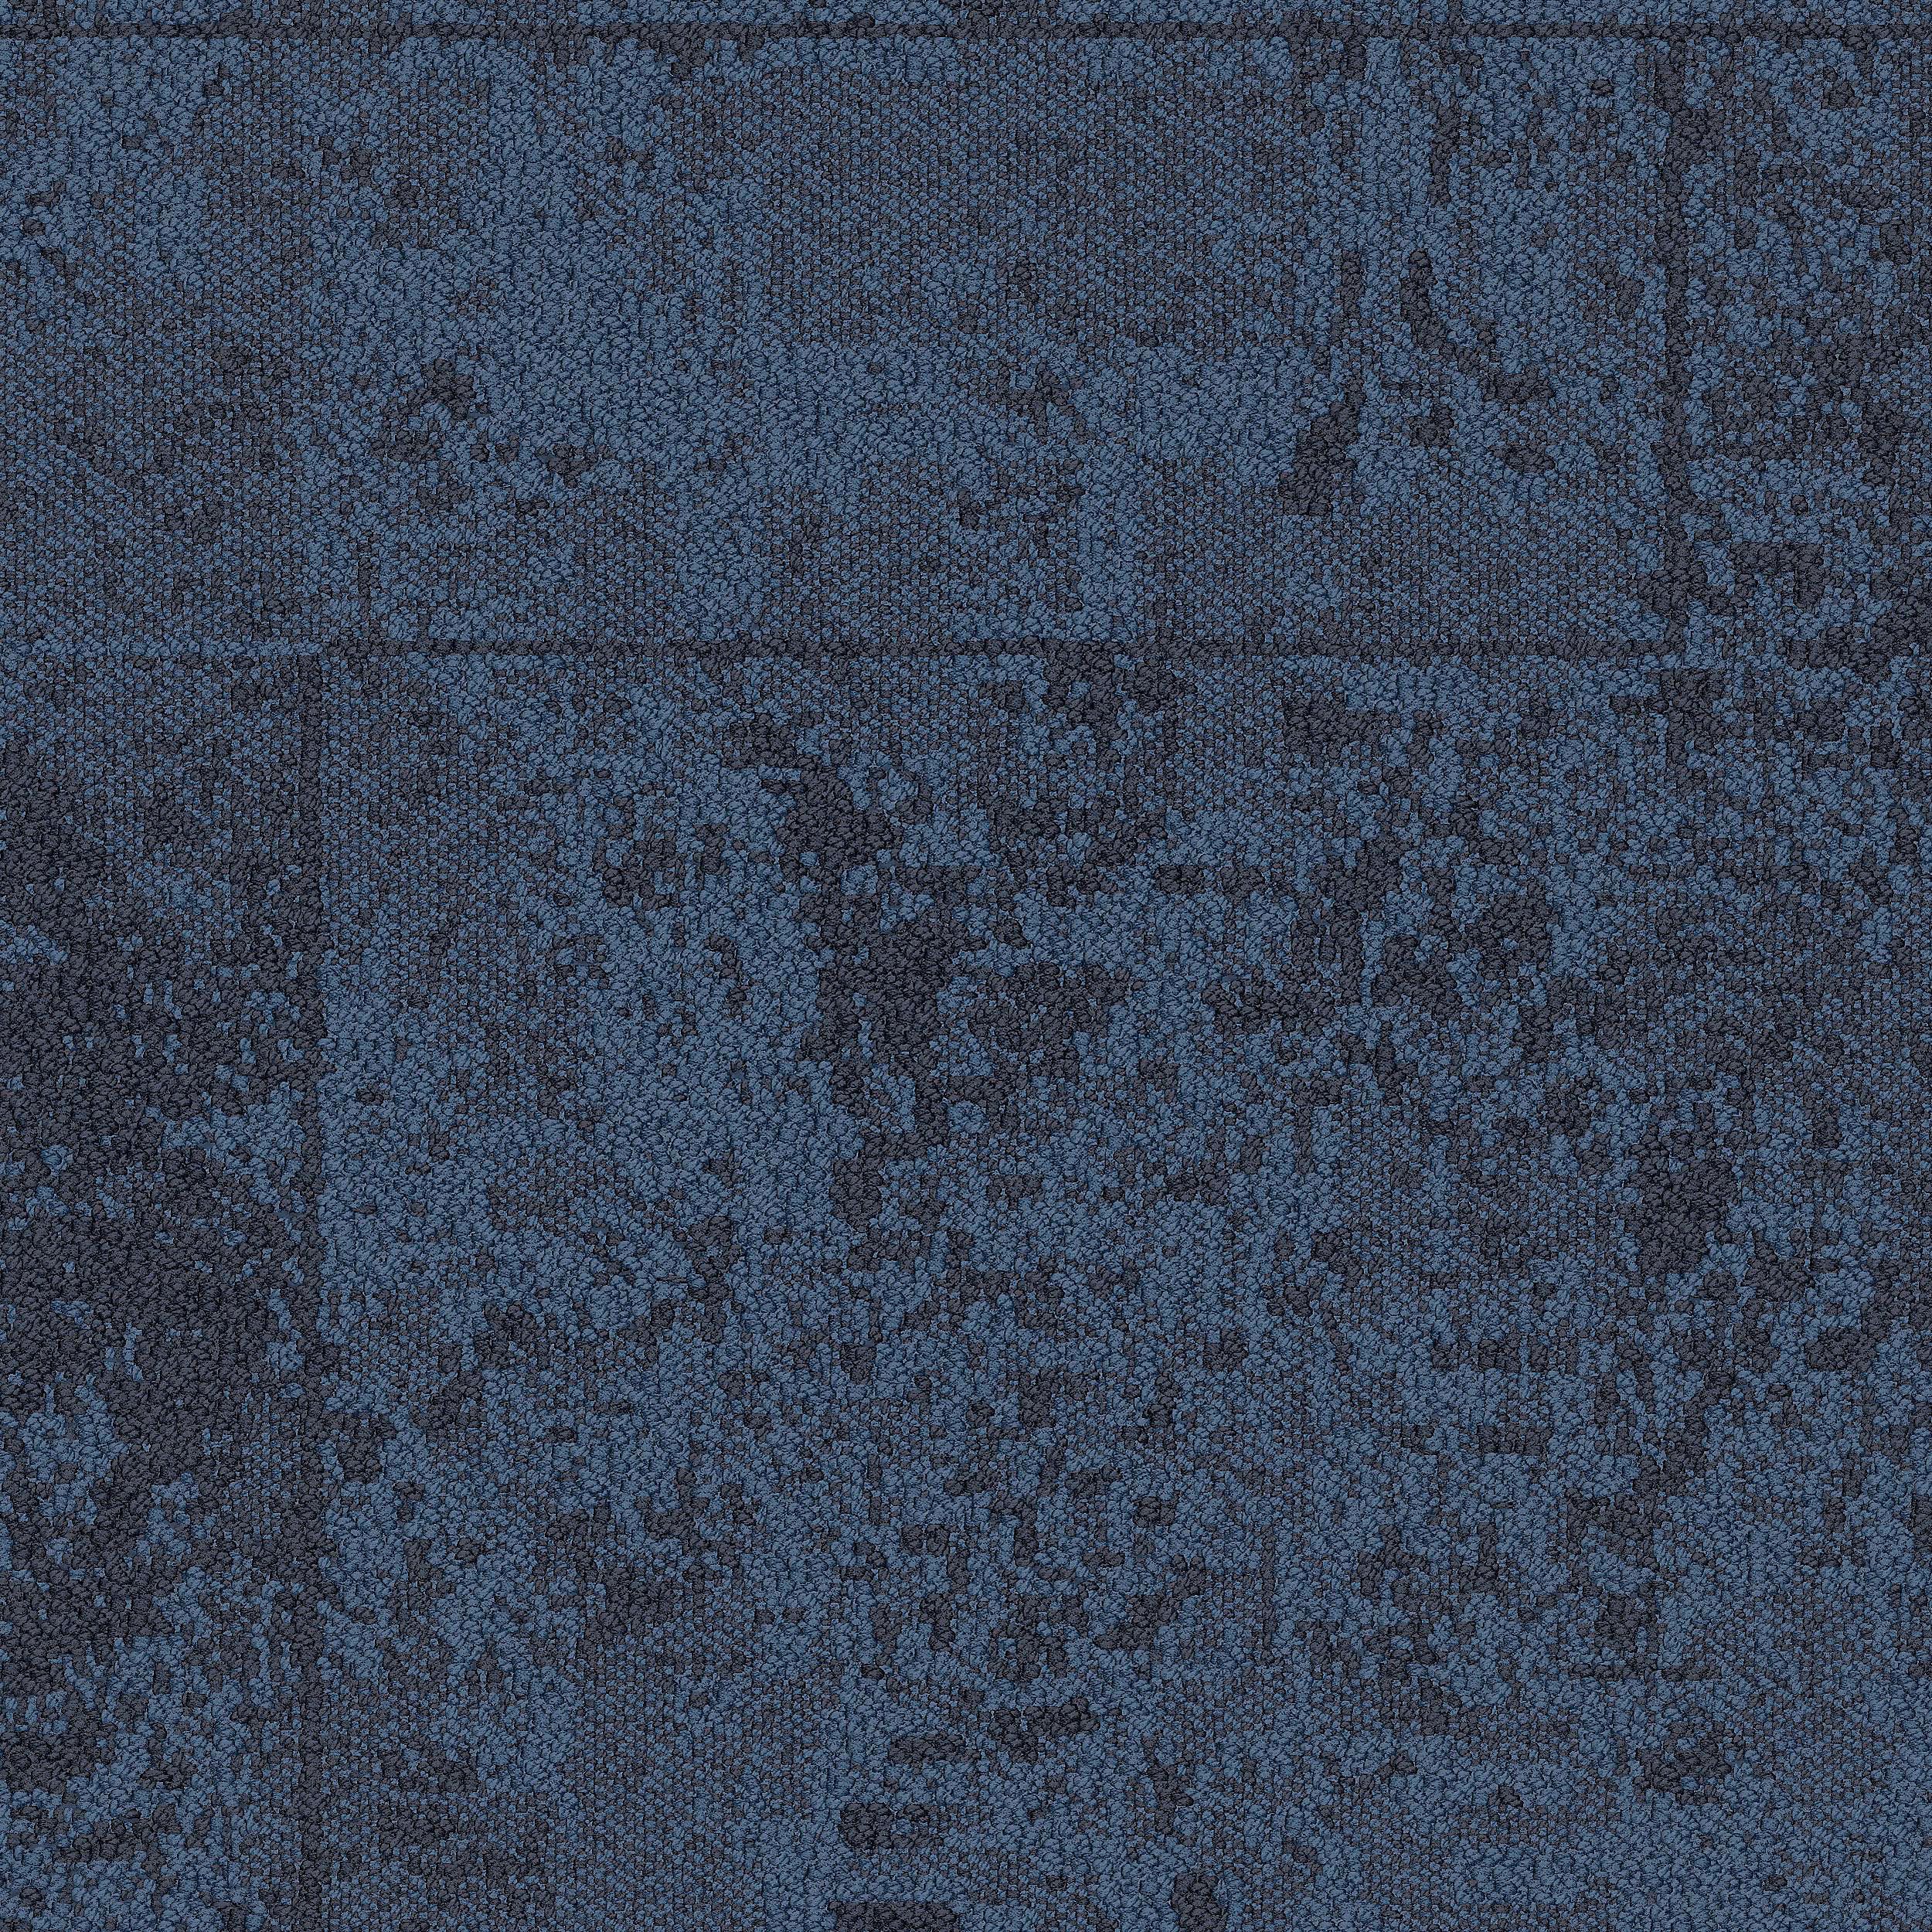 B603 Carpet Tile In Pacific afbeeldingnummer 2